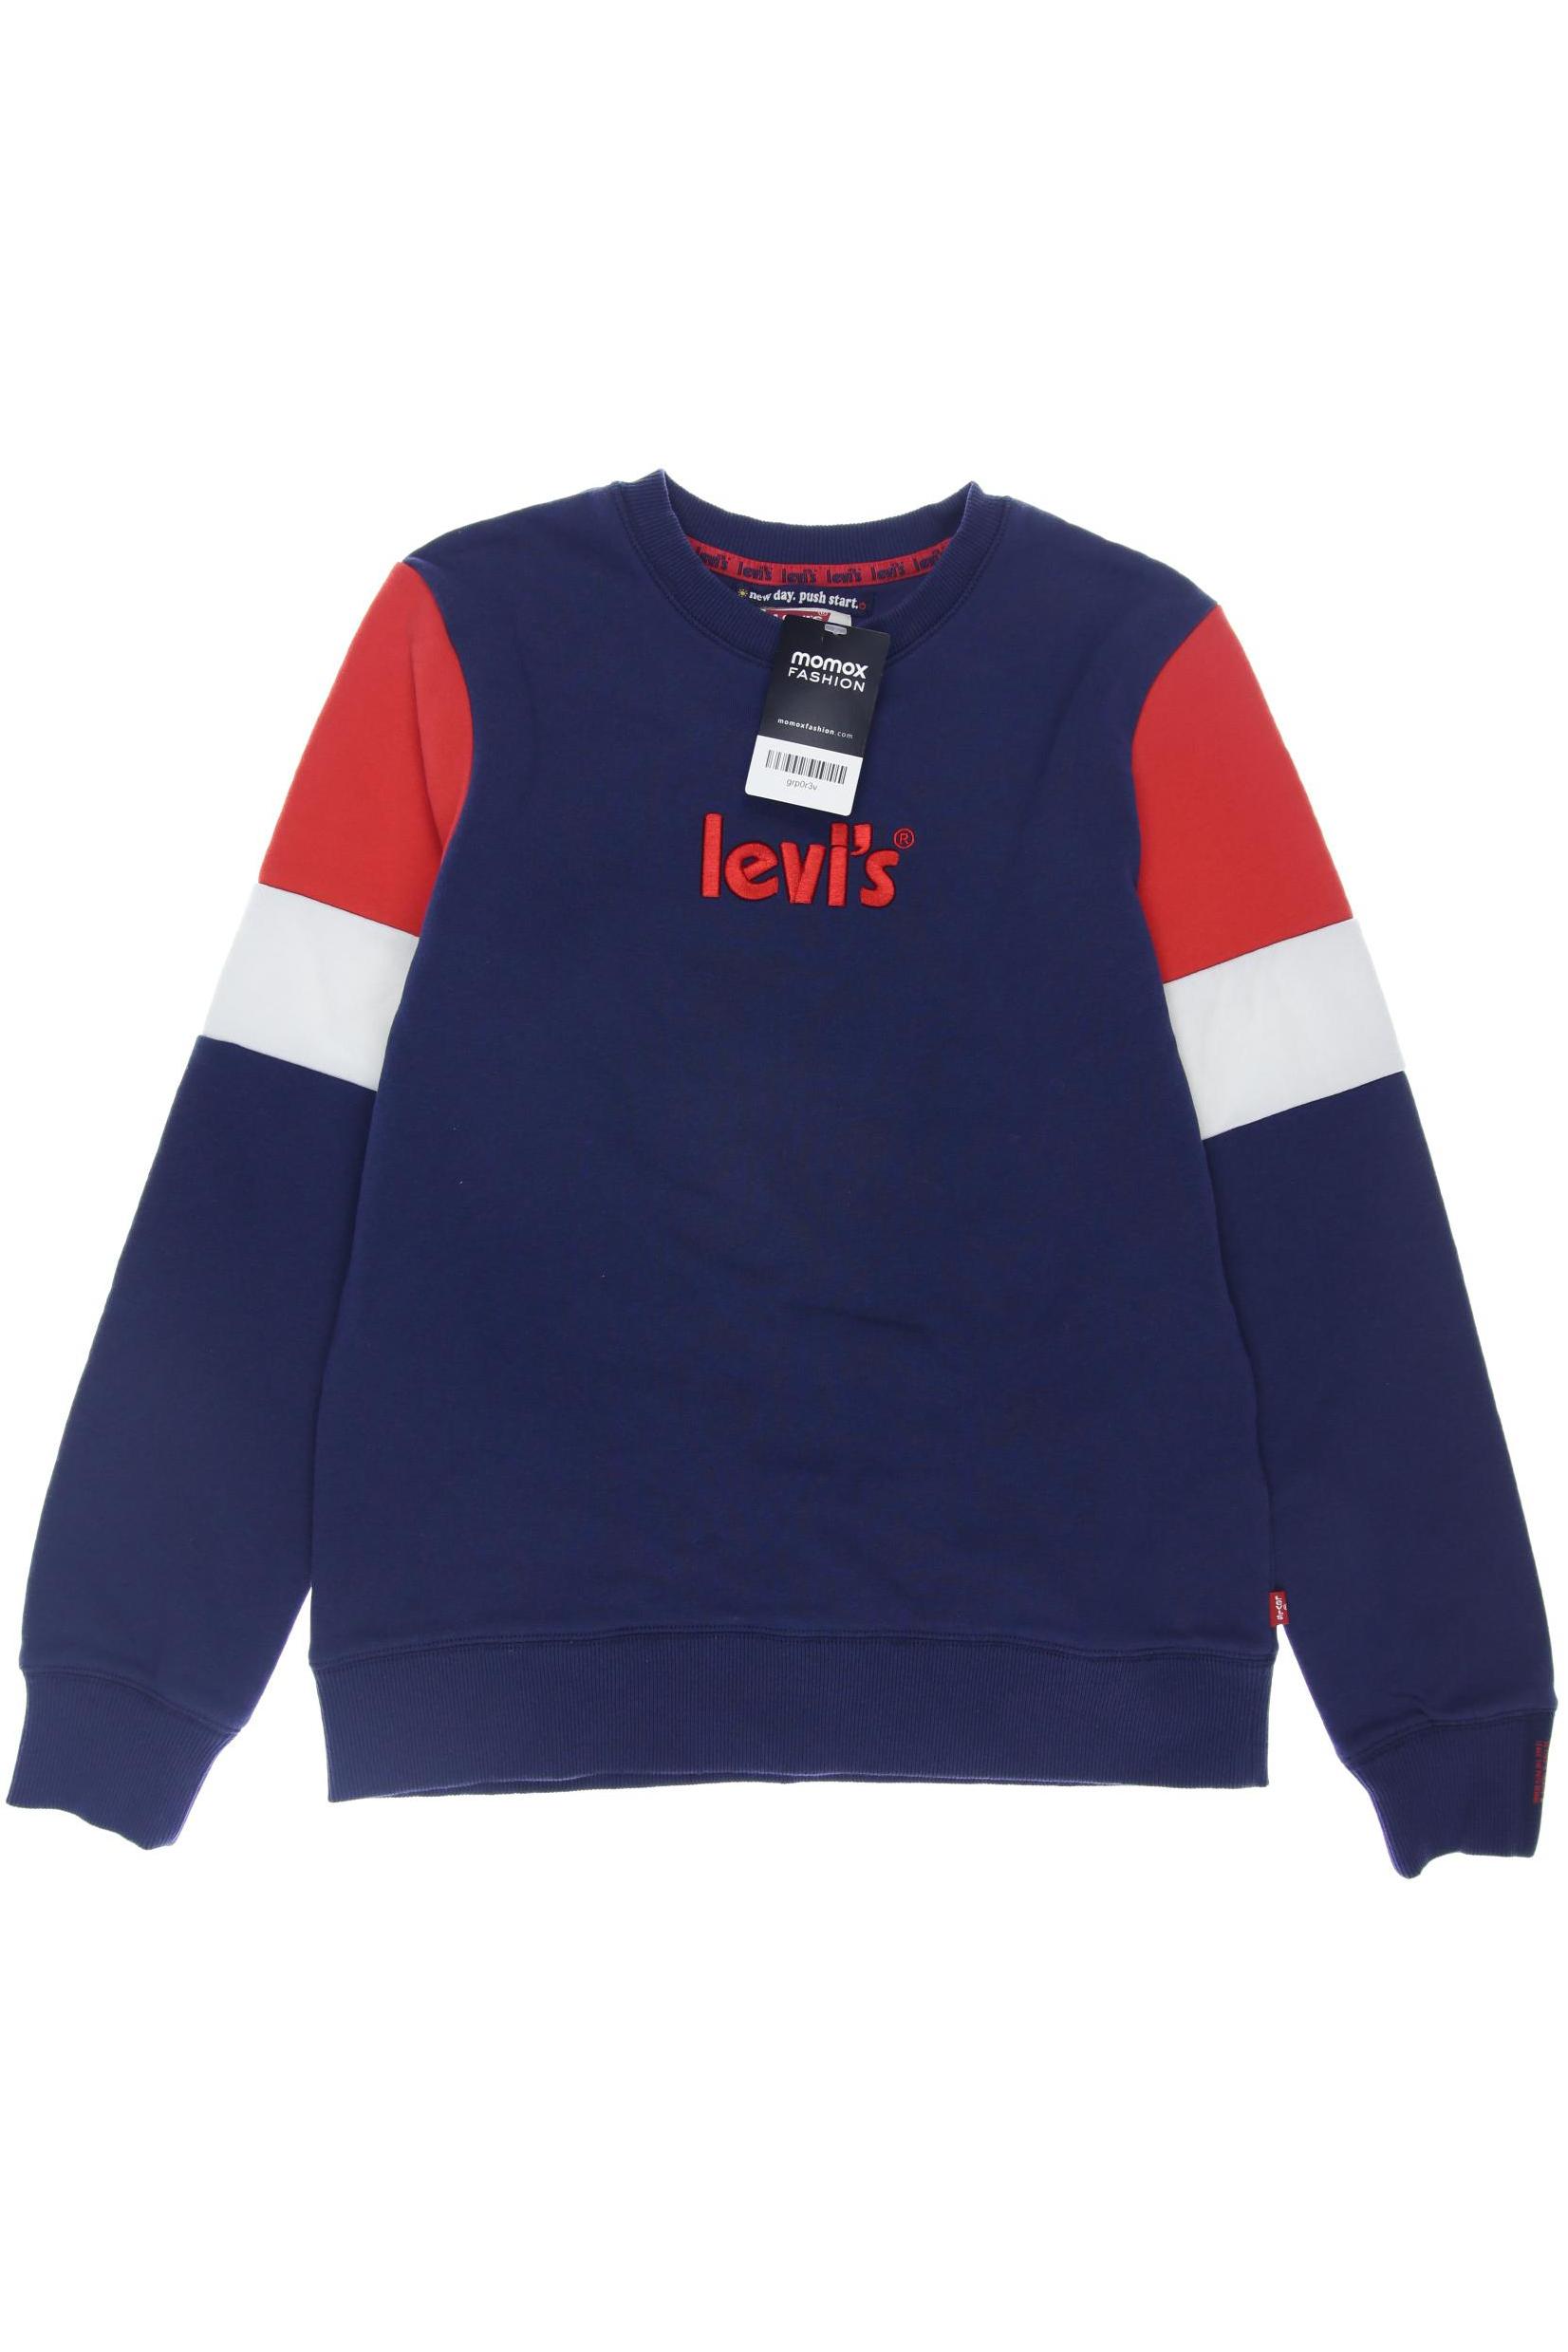 Levis Herren Hoodies & Sweater, marineblau, Gr. 164 von Levis